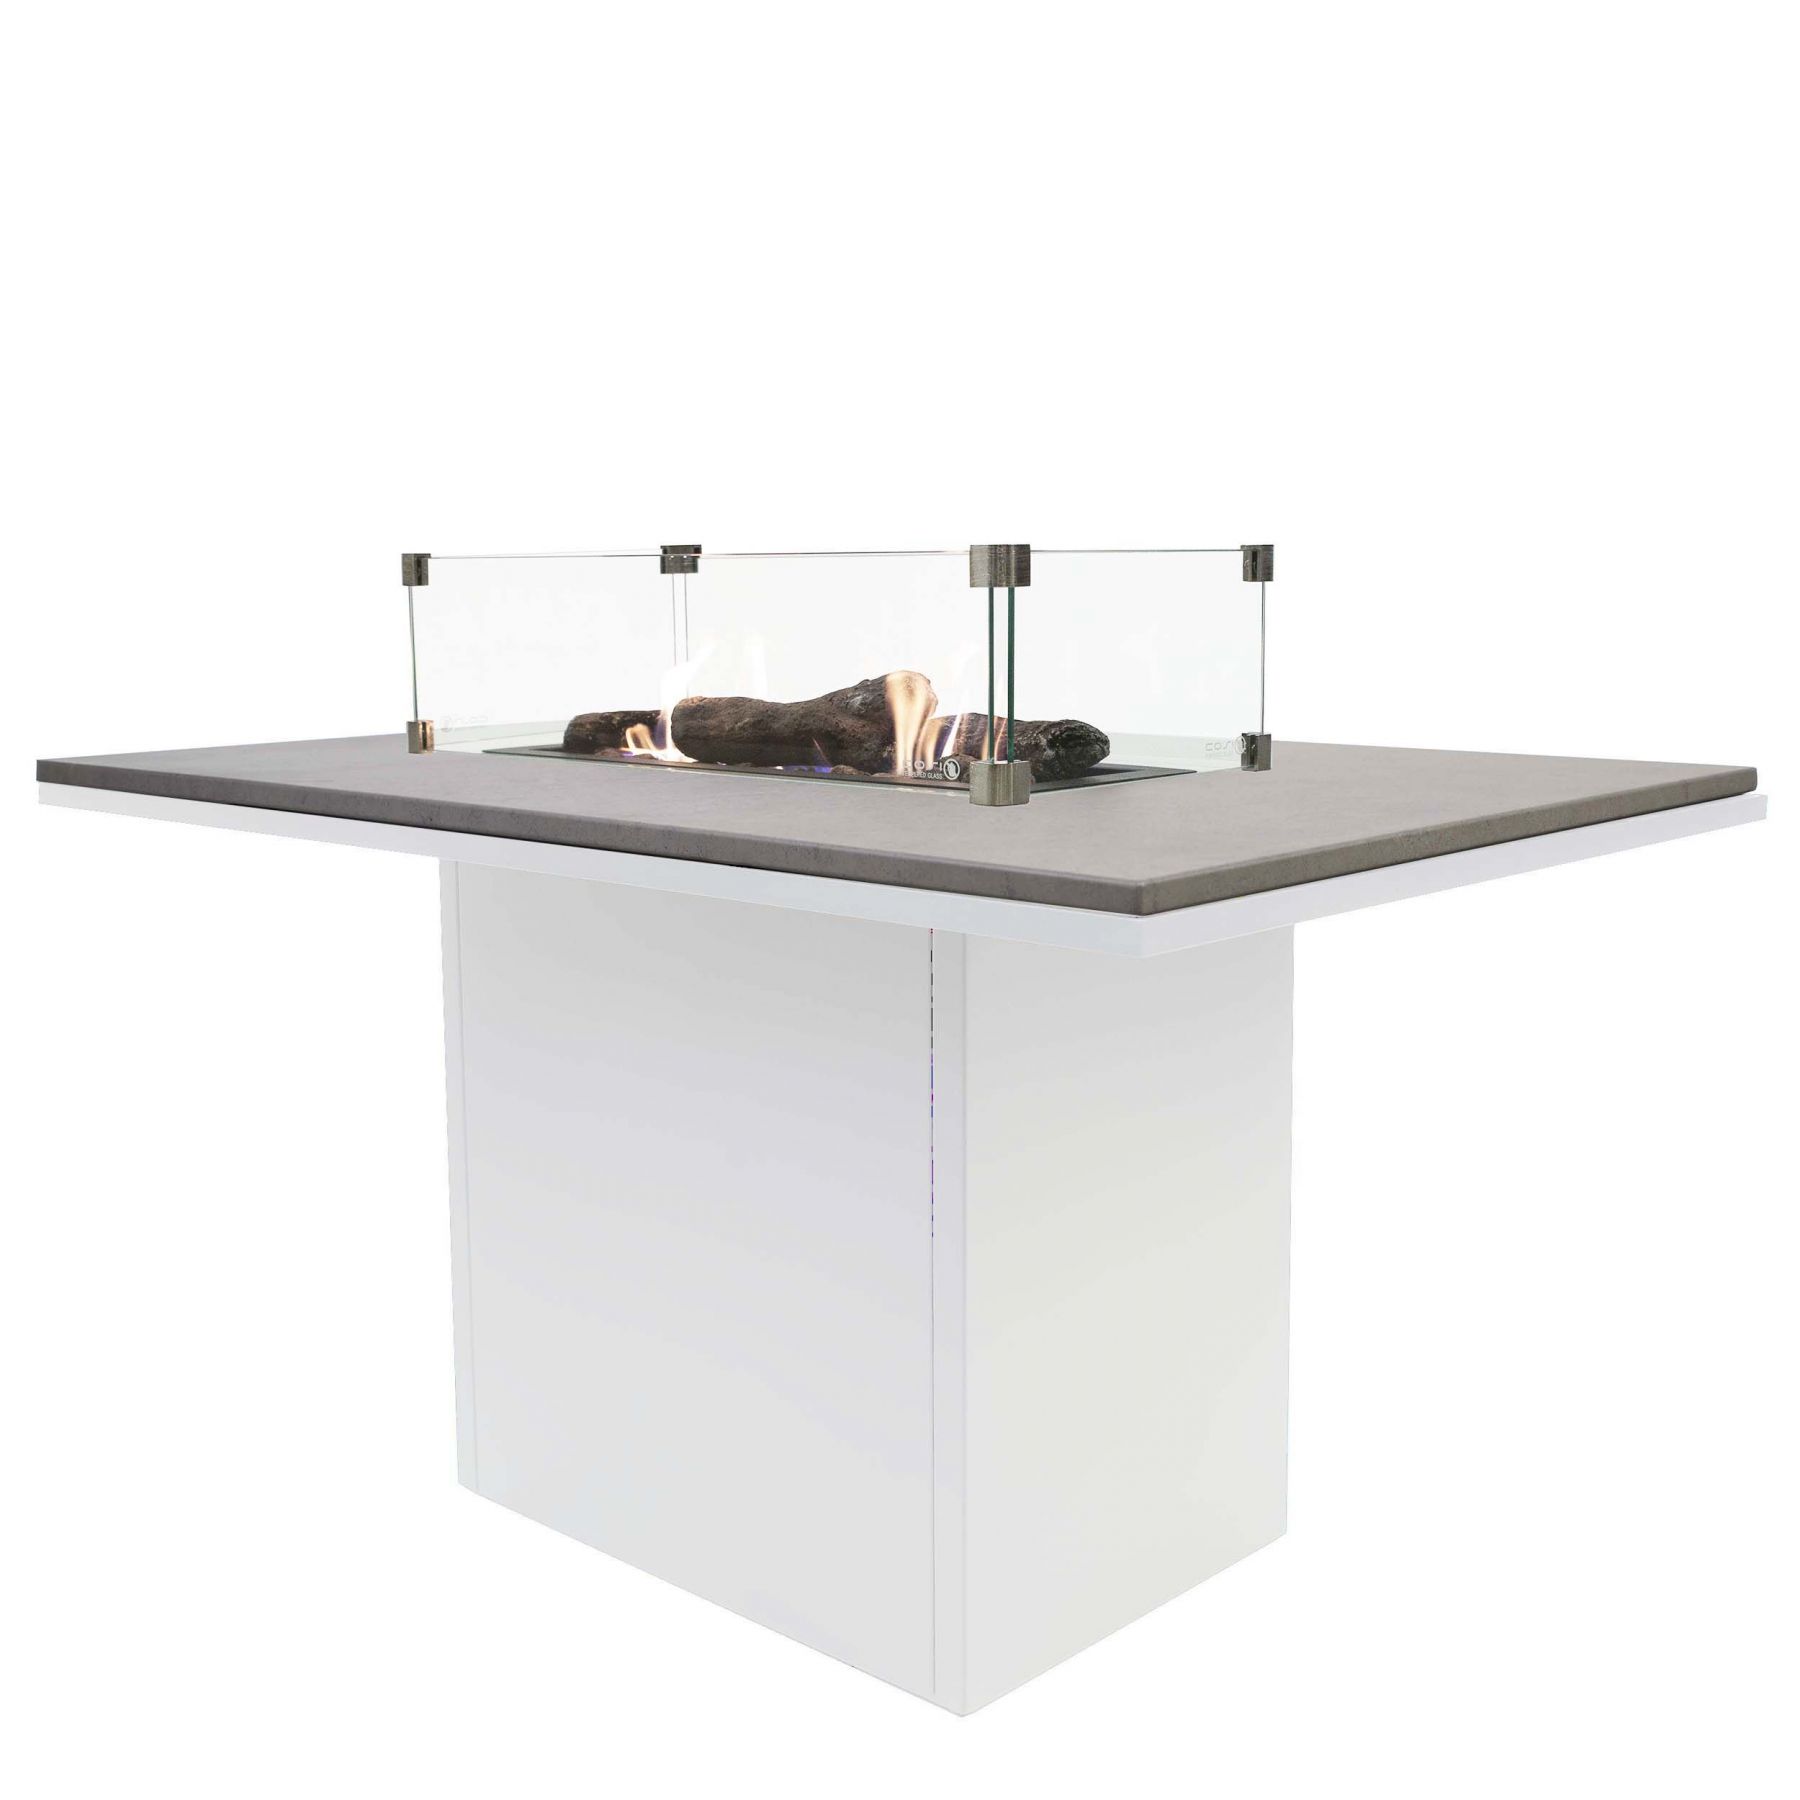 Krbový plynový stůl Cosiloft 120 vysoký jídelní stůl bílý rám / deska šedá (neobsahuje sklo) COSI - Domio.cz